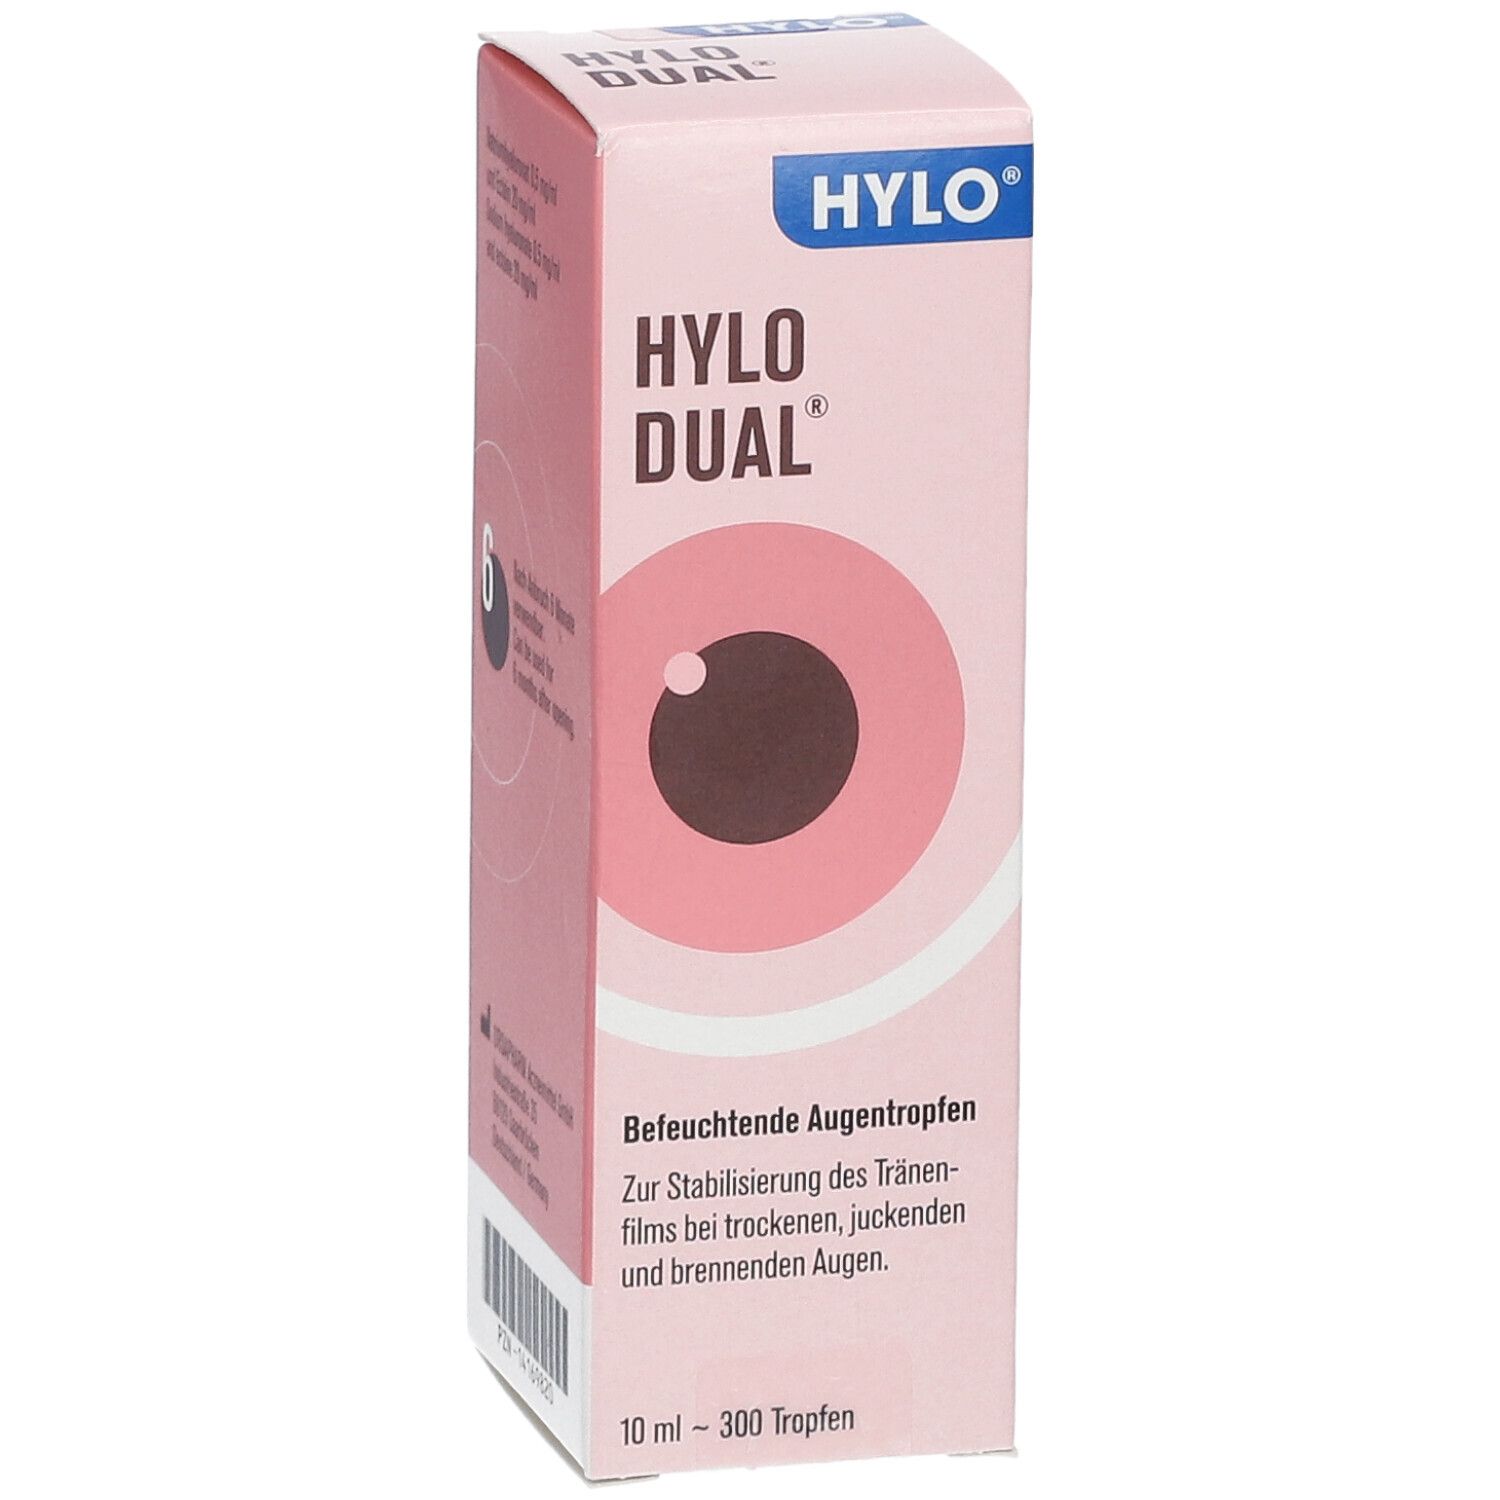 HYLO Dual - Lubricating Drops 0.5mg/mL